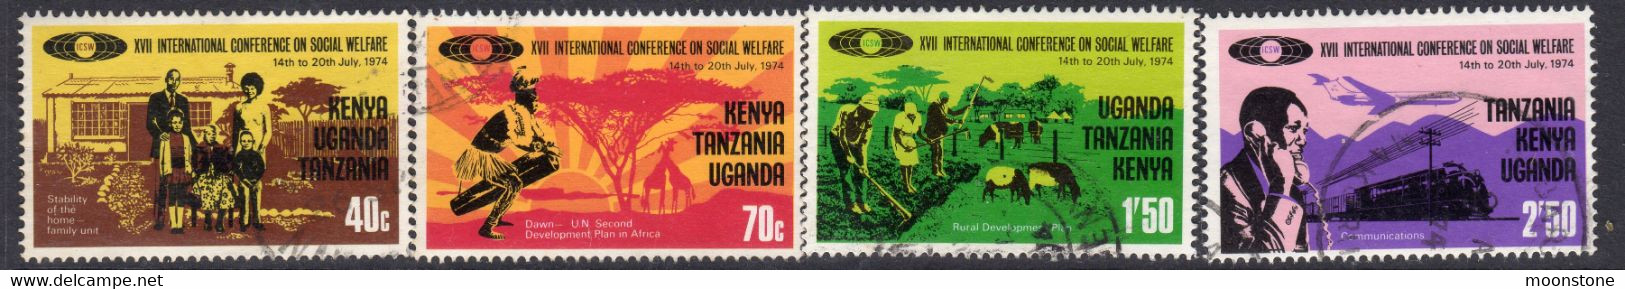 Kenya, Uganda & Tanzania 1974 Social Welfare Conference Set Of 4, Used, SG 355/8 (BA2) - Kenya, Uganda & Tanzania